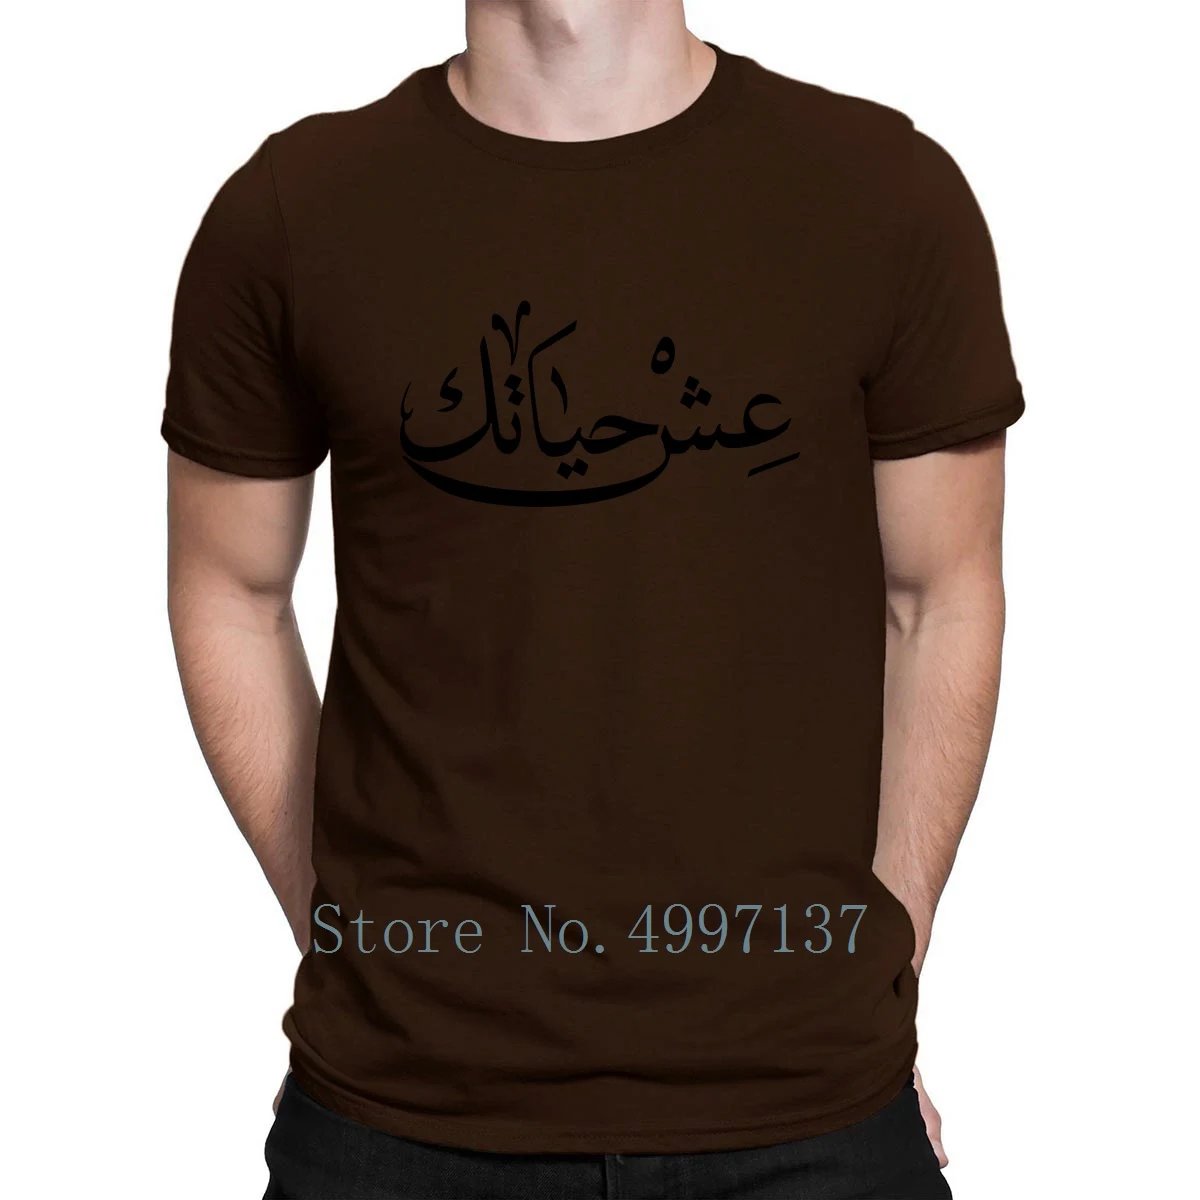 Арабская футболка с надписью «Live Your Life», смешная Футболка с принтом, Размеры S-Xxxl, Весенняя футболка из хлопка в арабском стиле - Цвет: coffee